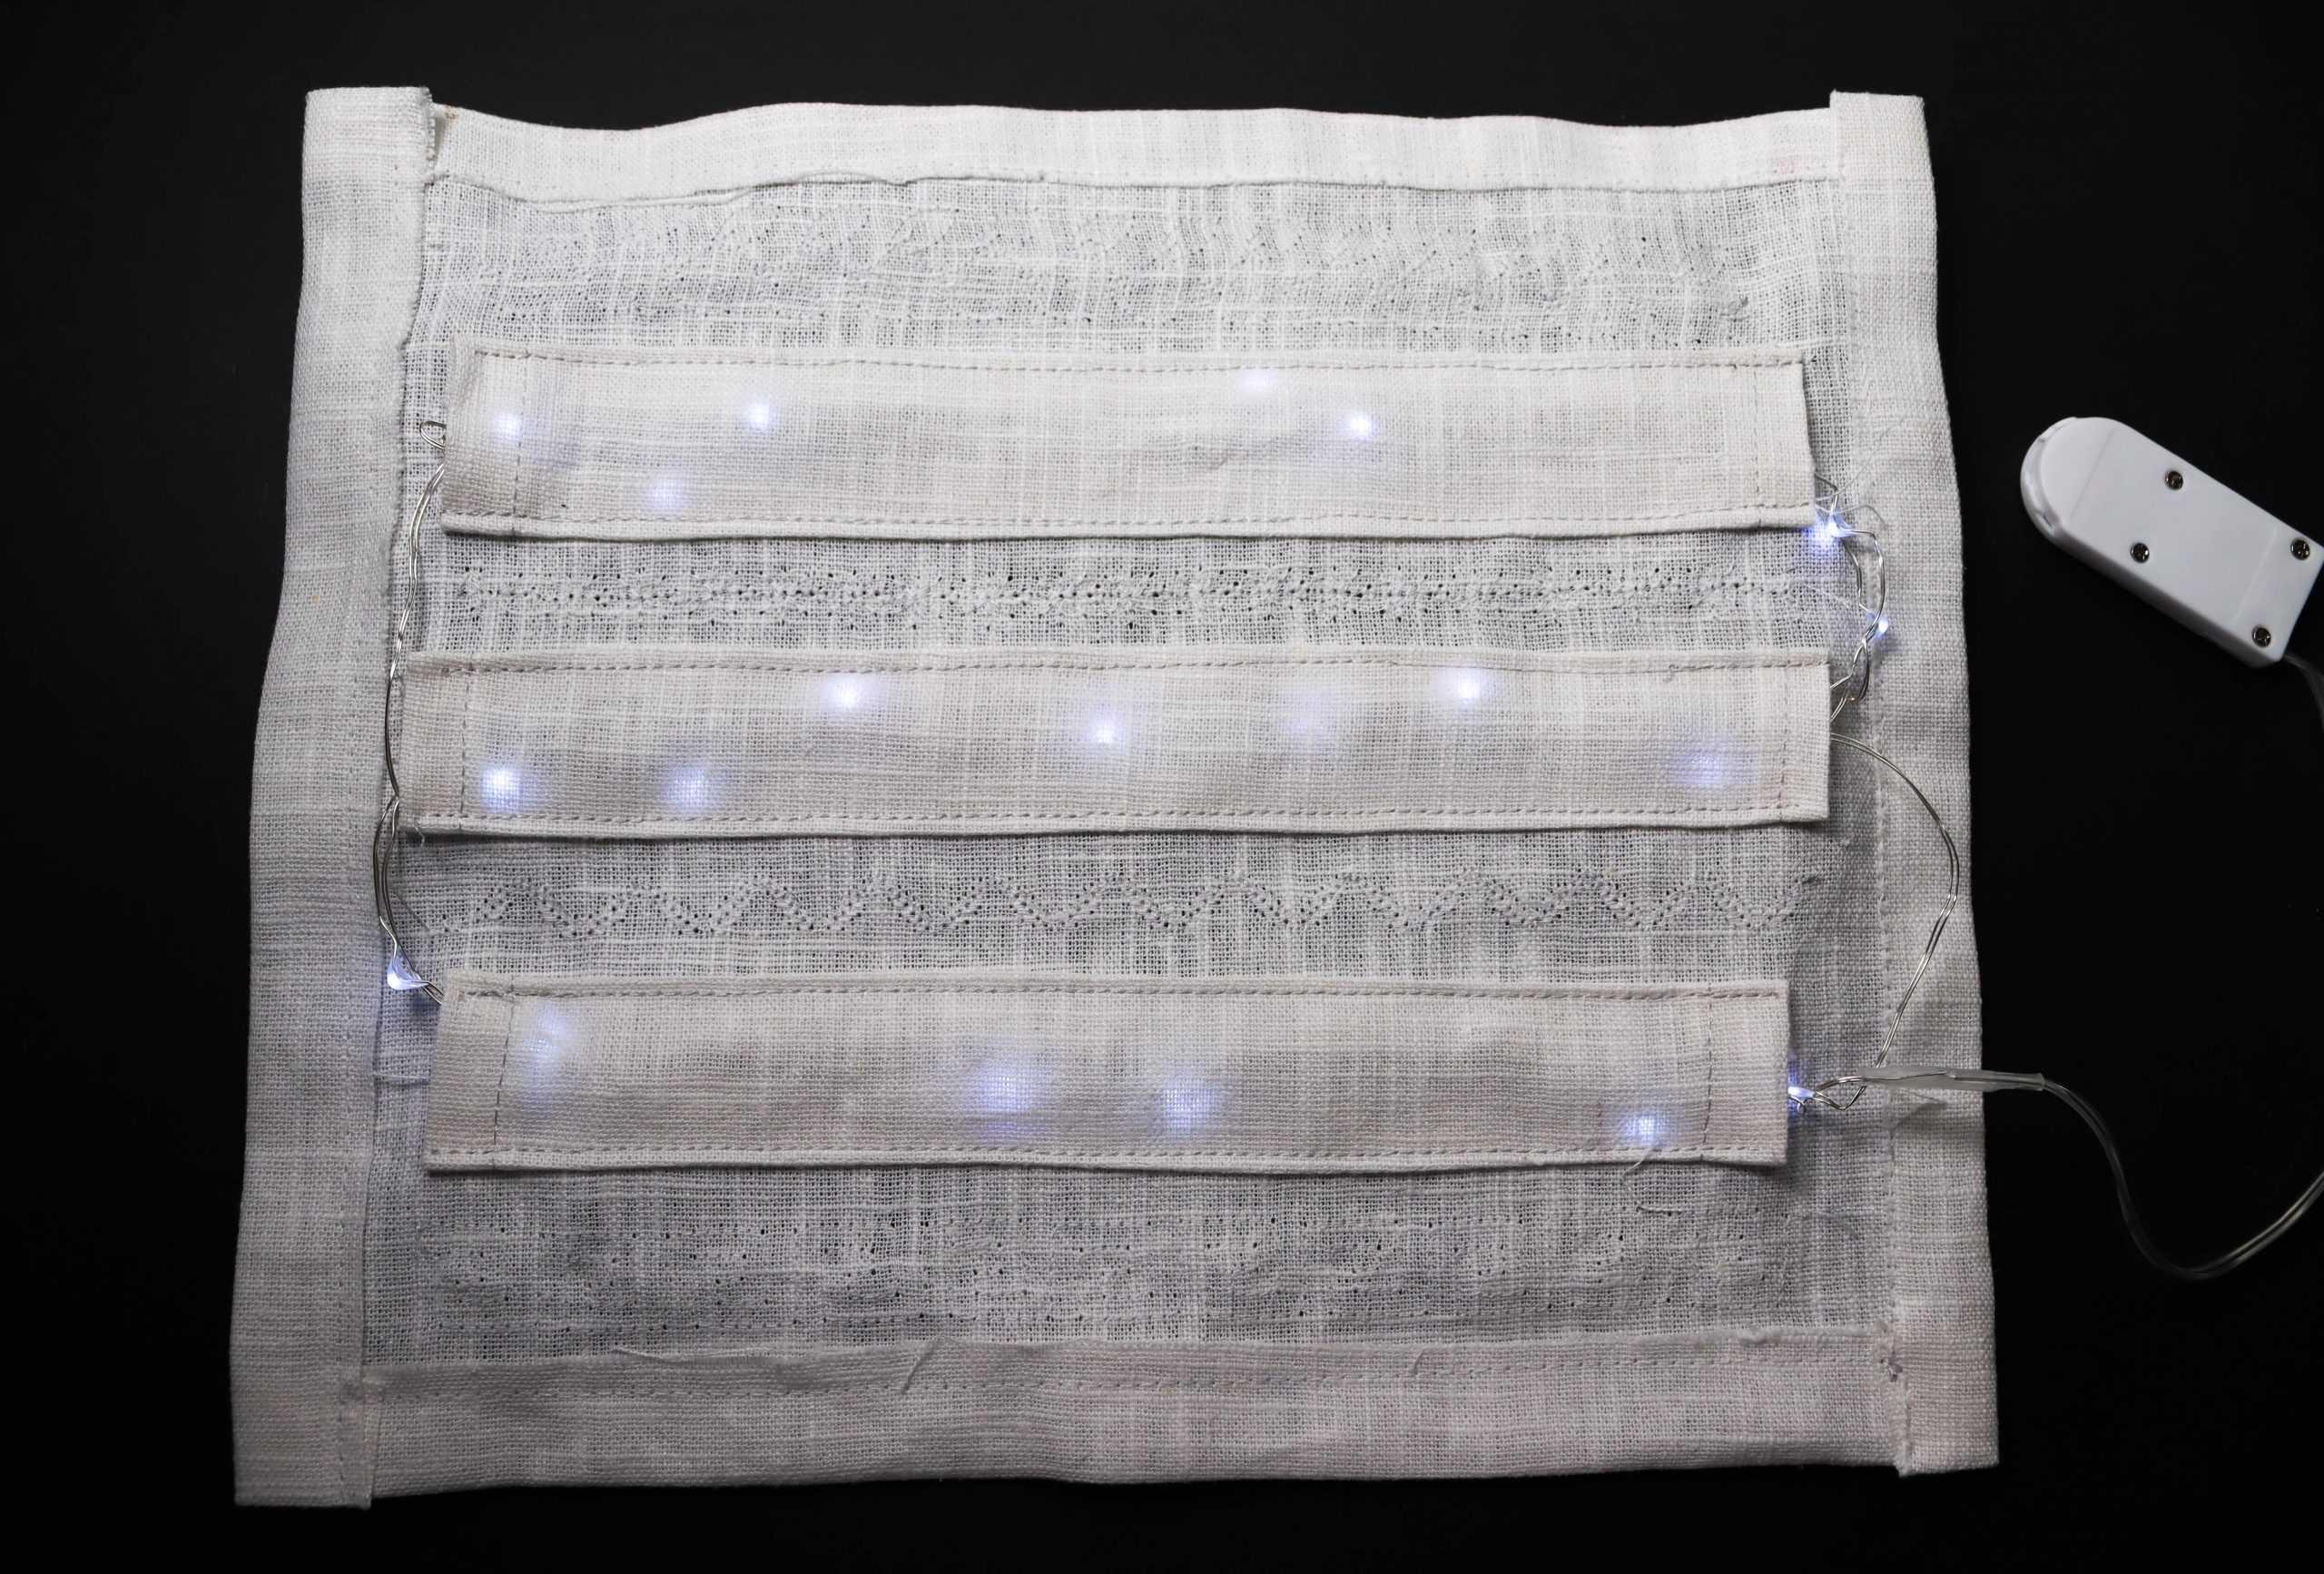 Torrent lassen zeven Stoffen lantaarns naaien met led-lampjessnoer